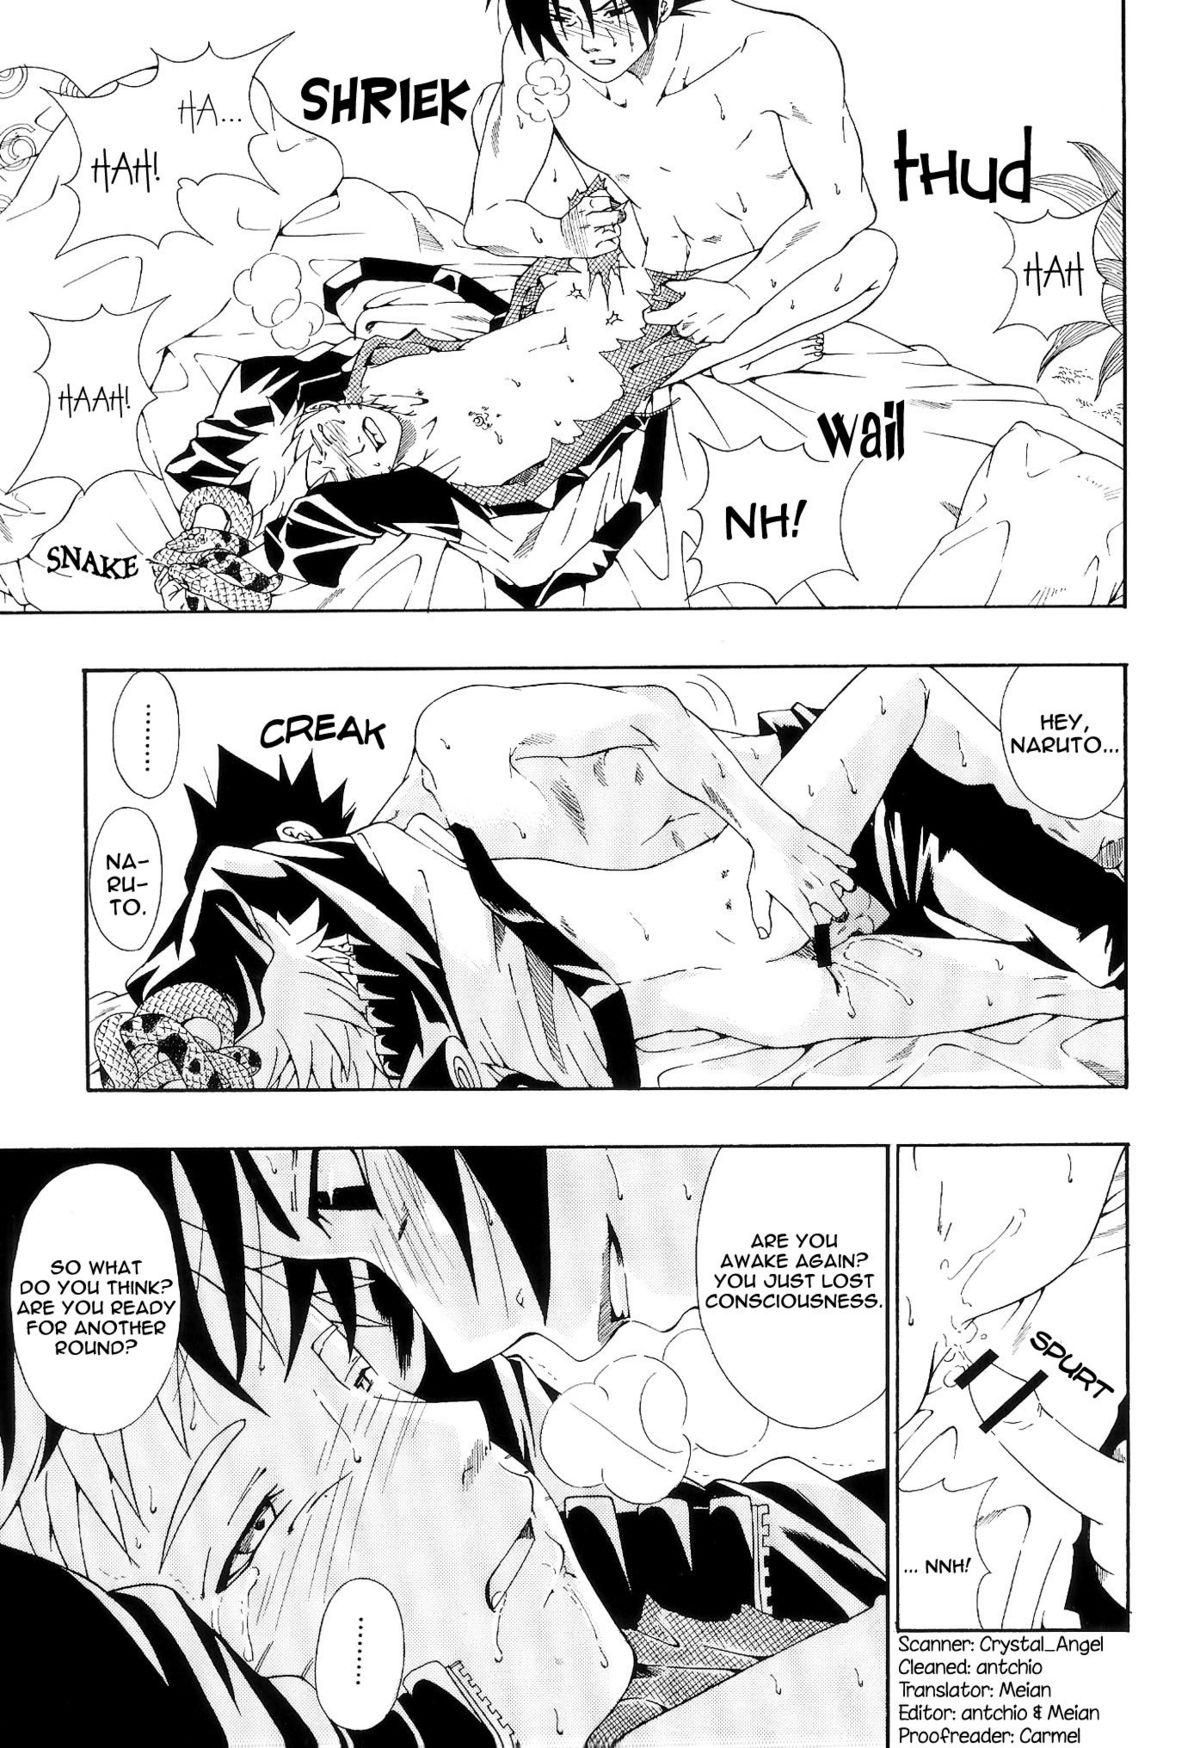 ERO ERO²: Volume 1.5  (NARUTO) [Sasuke X Naruto] YAOI -ENG- 11